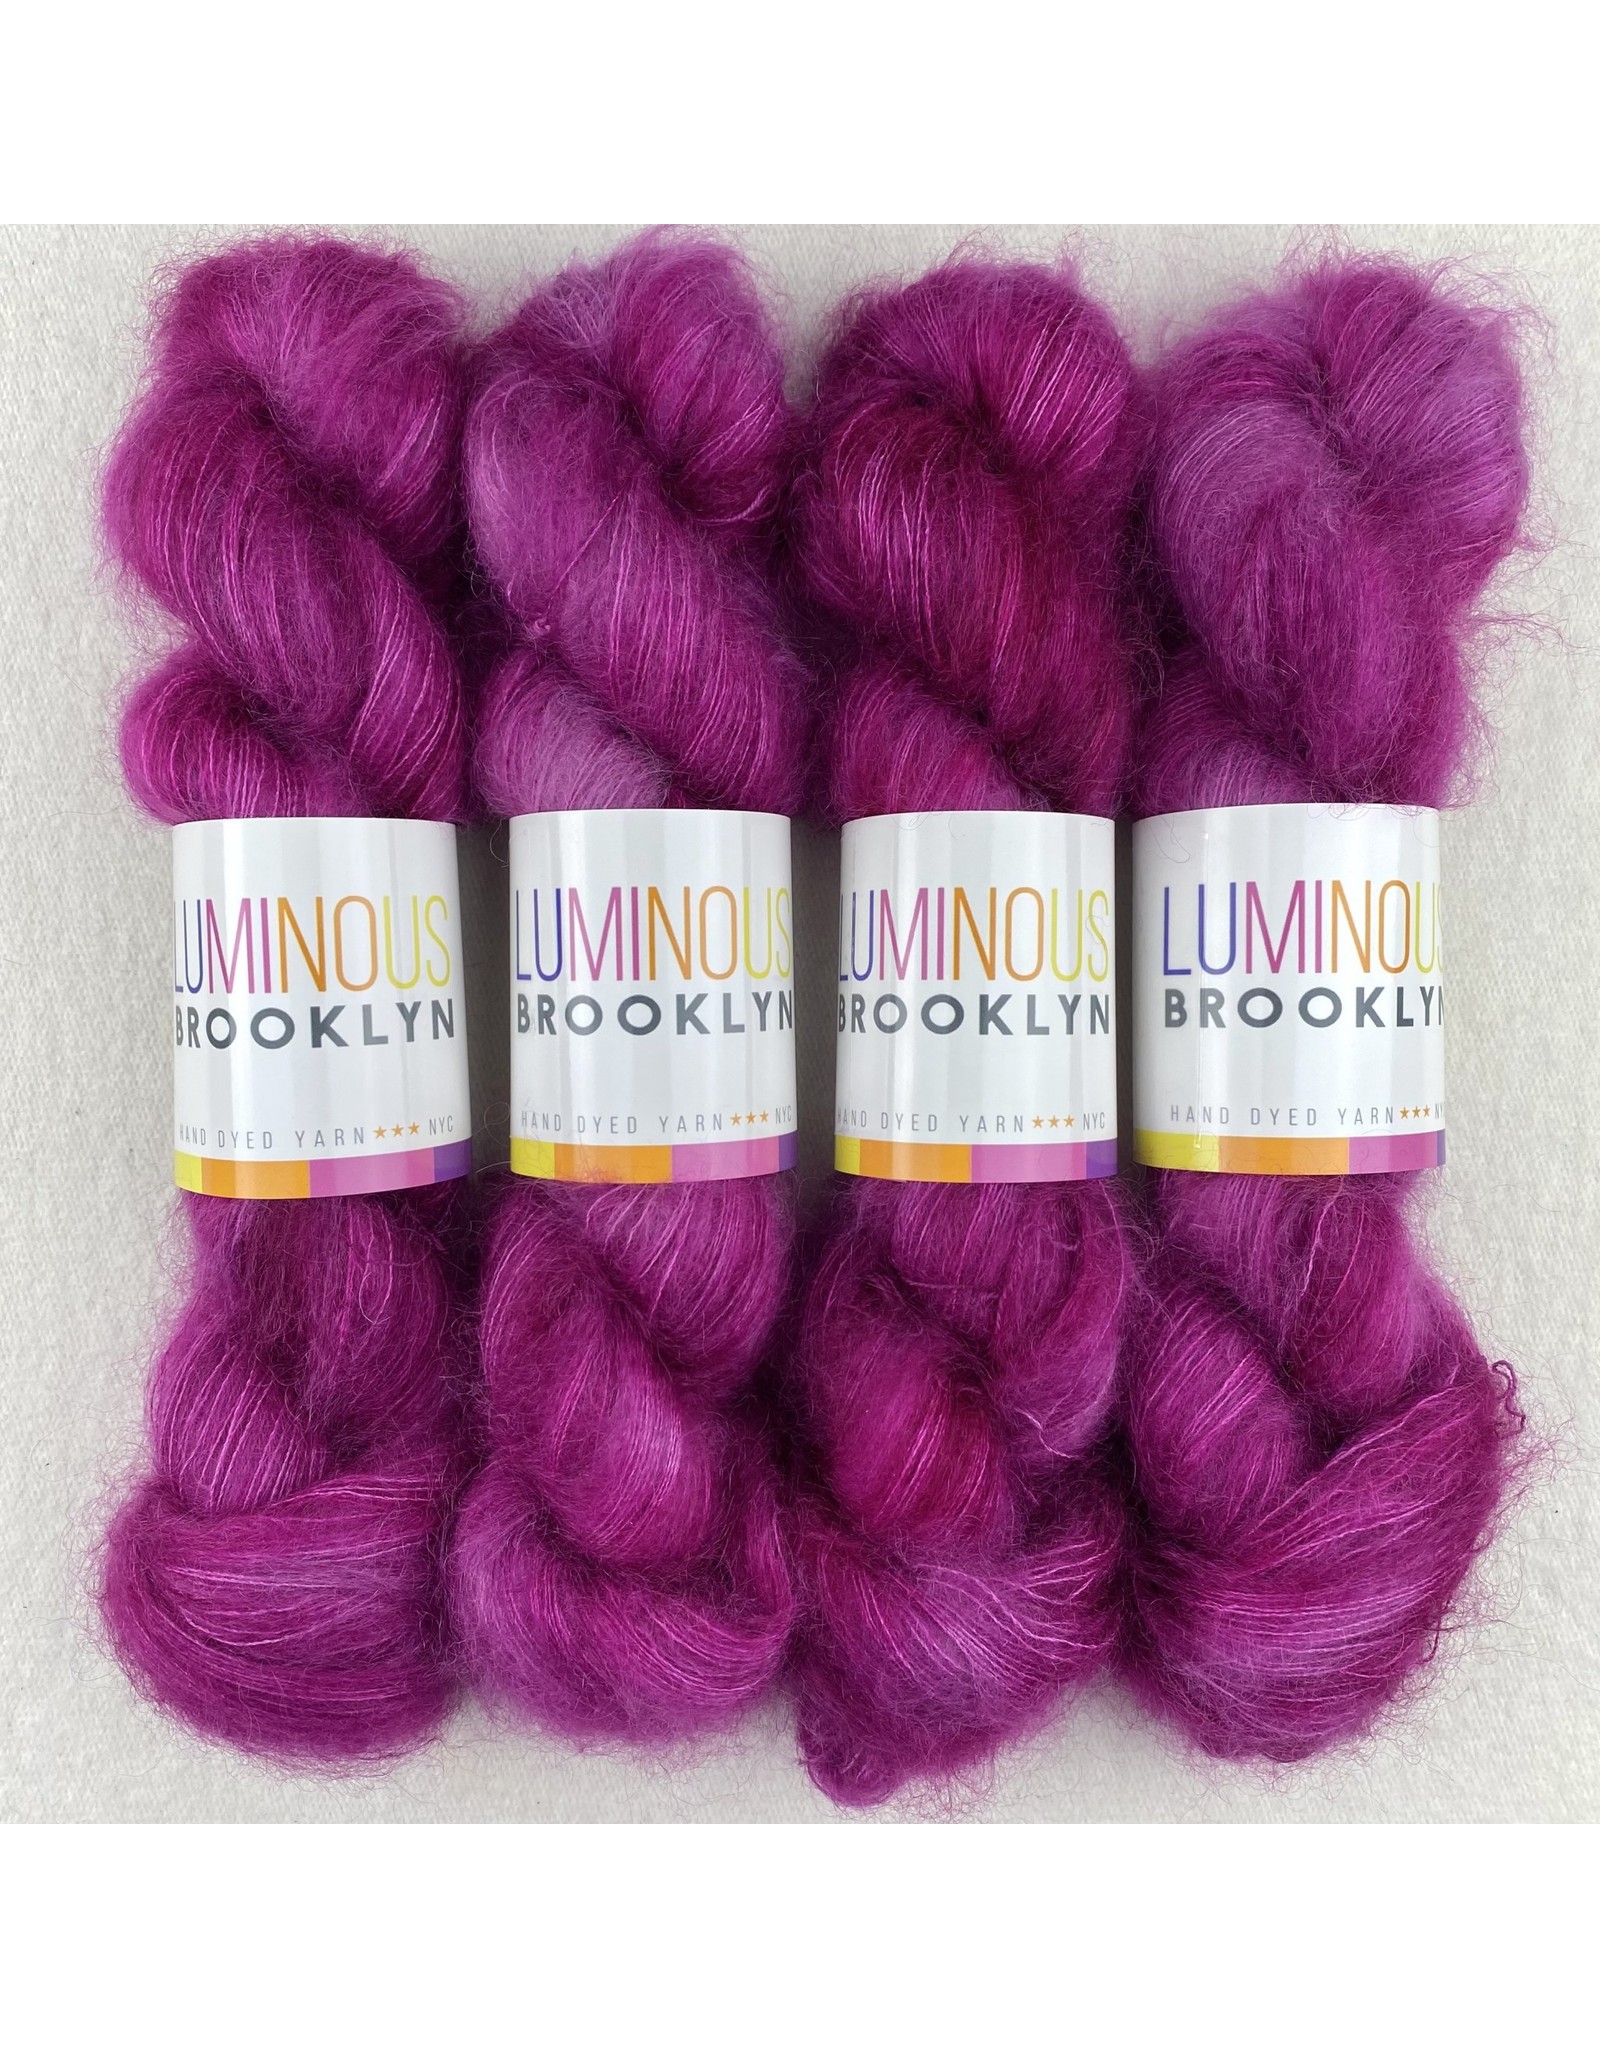 Luminous Brooklyn Fiorello - Shining Silk Mohair - Luminous Brooklyn